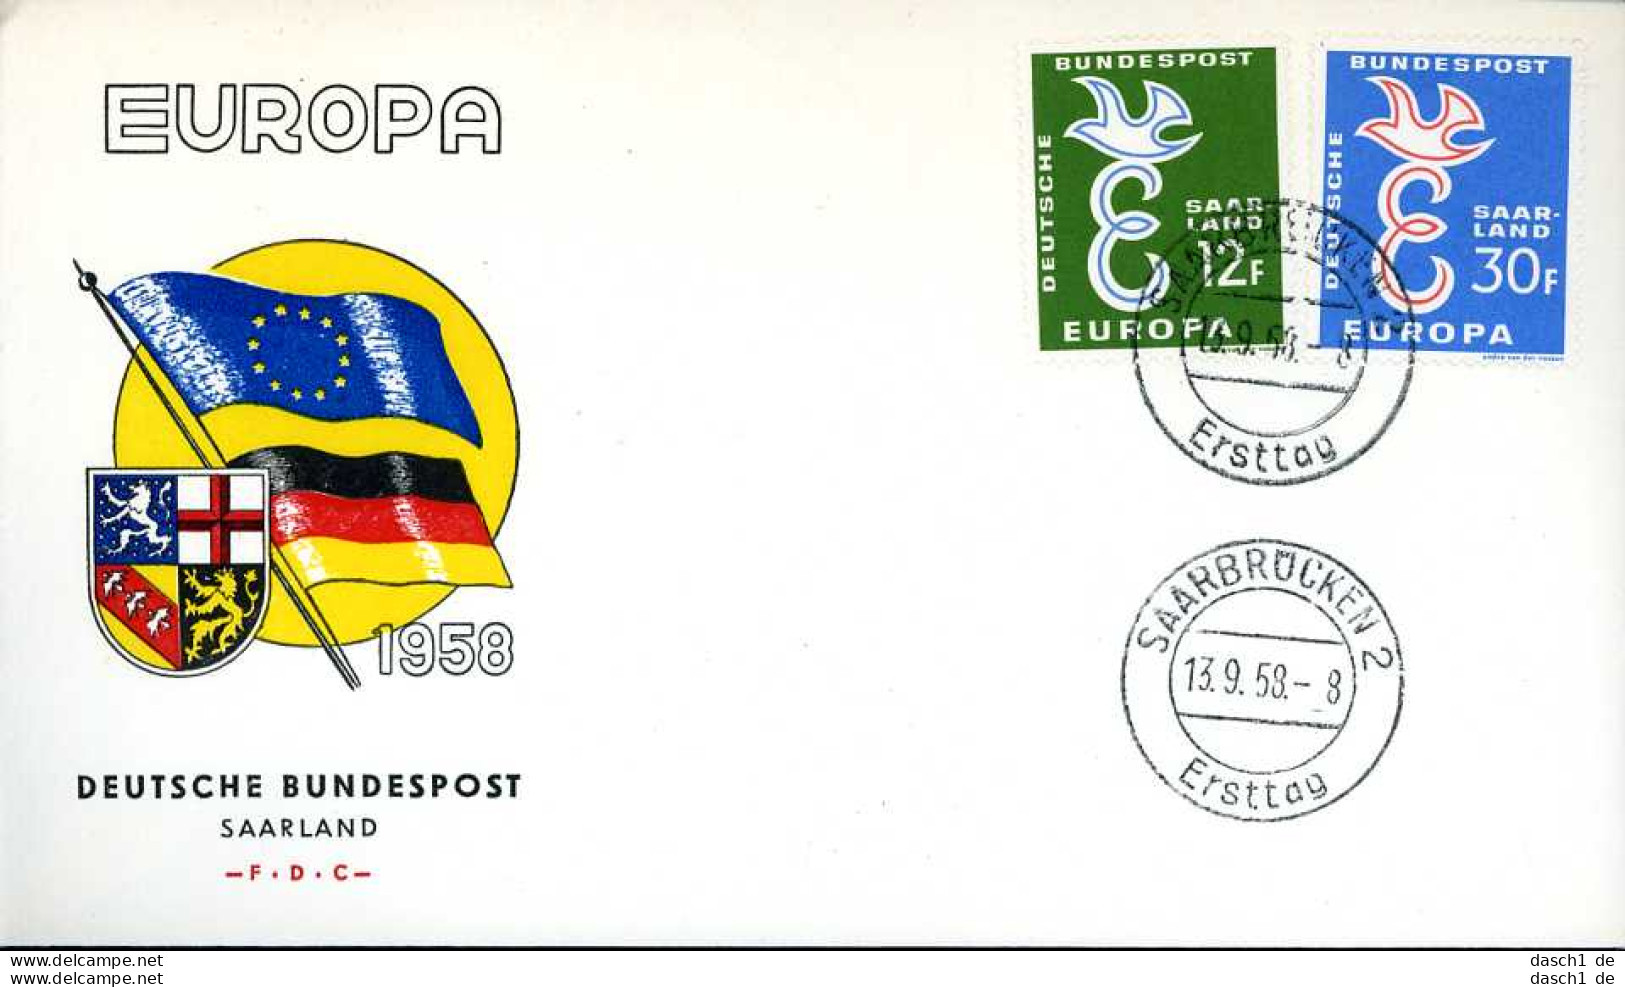 Europa, CEPT, 1958, FDC und Sonderbelege, 9 Briefe